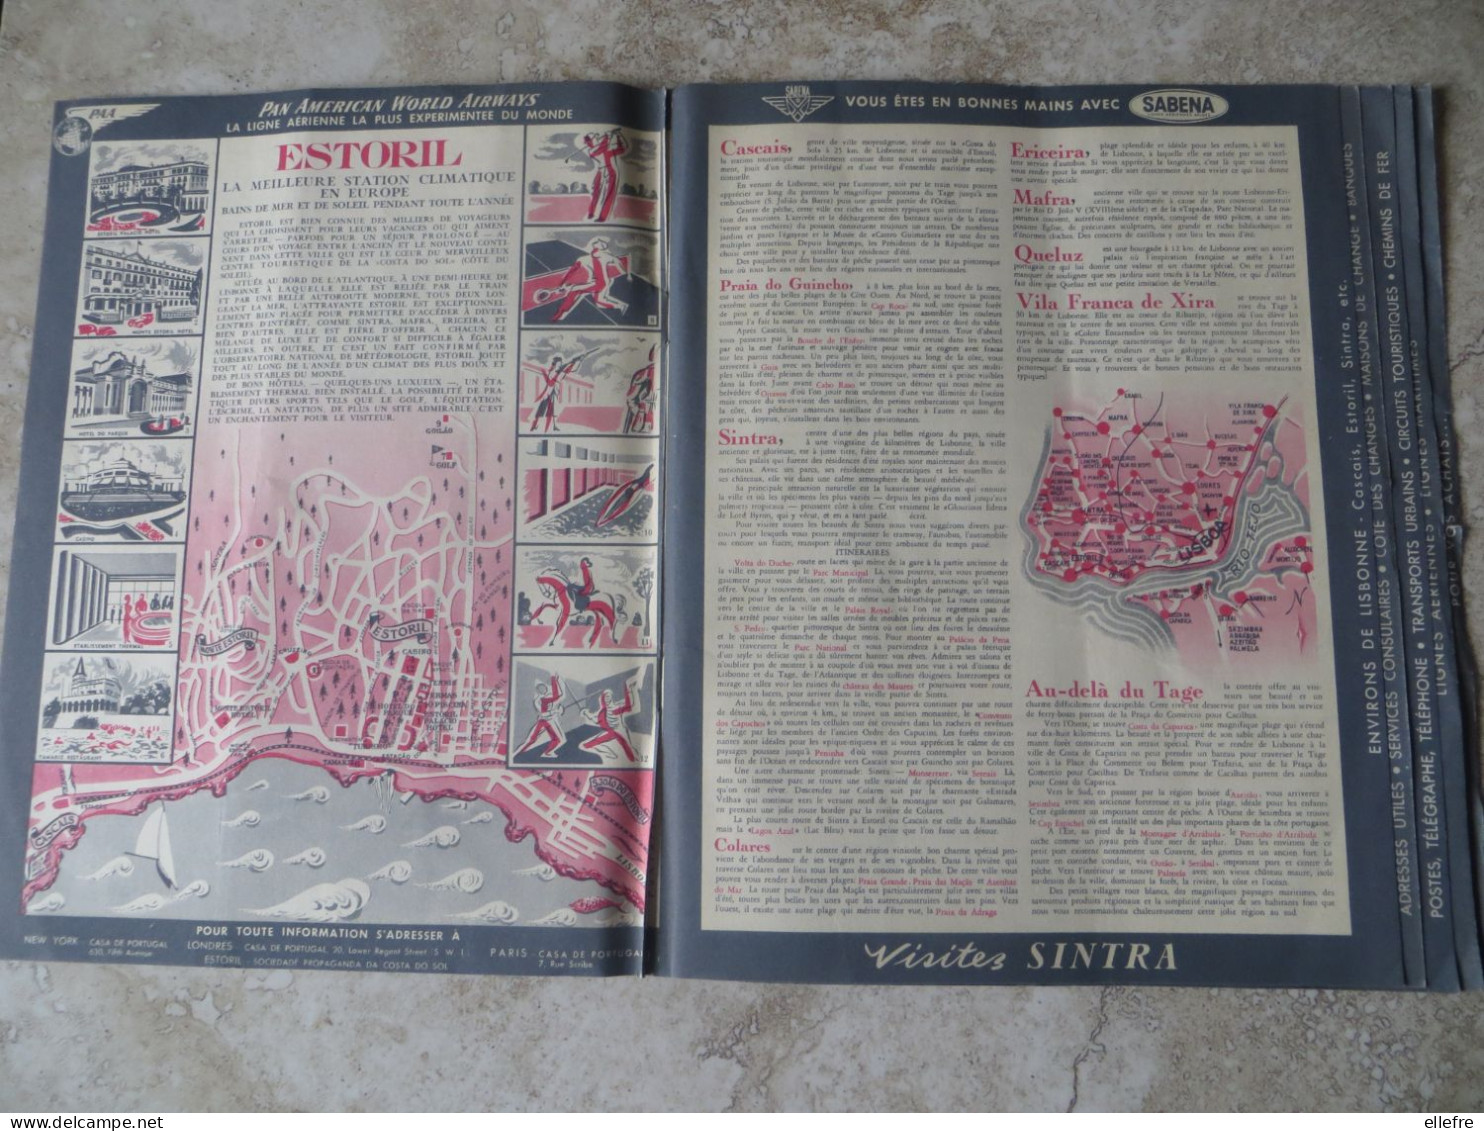 Publicité Beau dépliant touristique LISBONNE, plan horaires ligne aérienne illustration GUSTAVO FONTOURA 4/ 1956